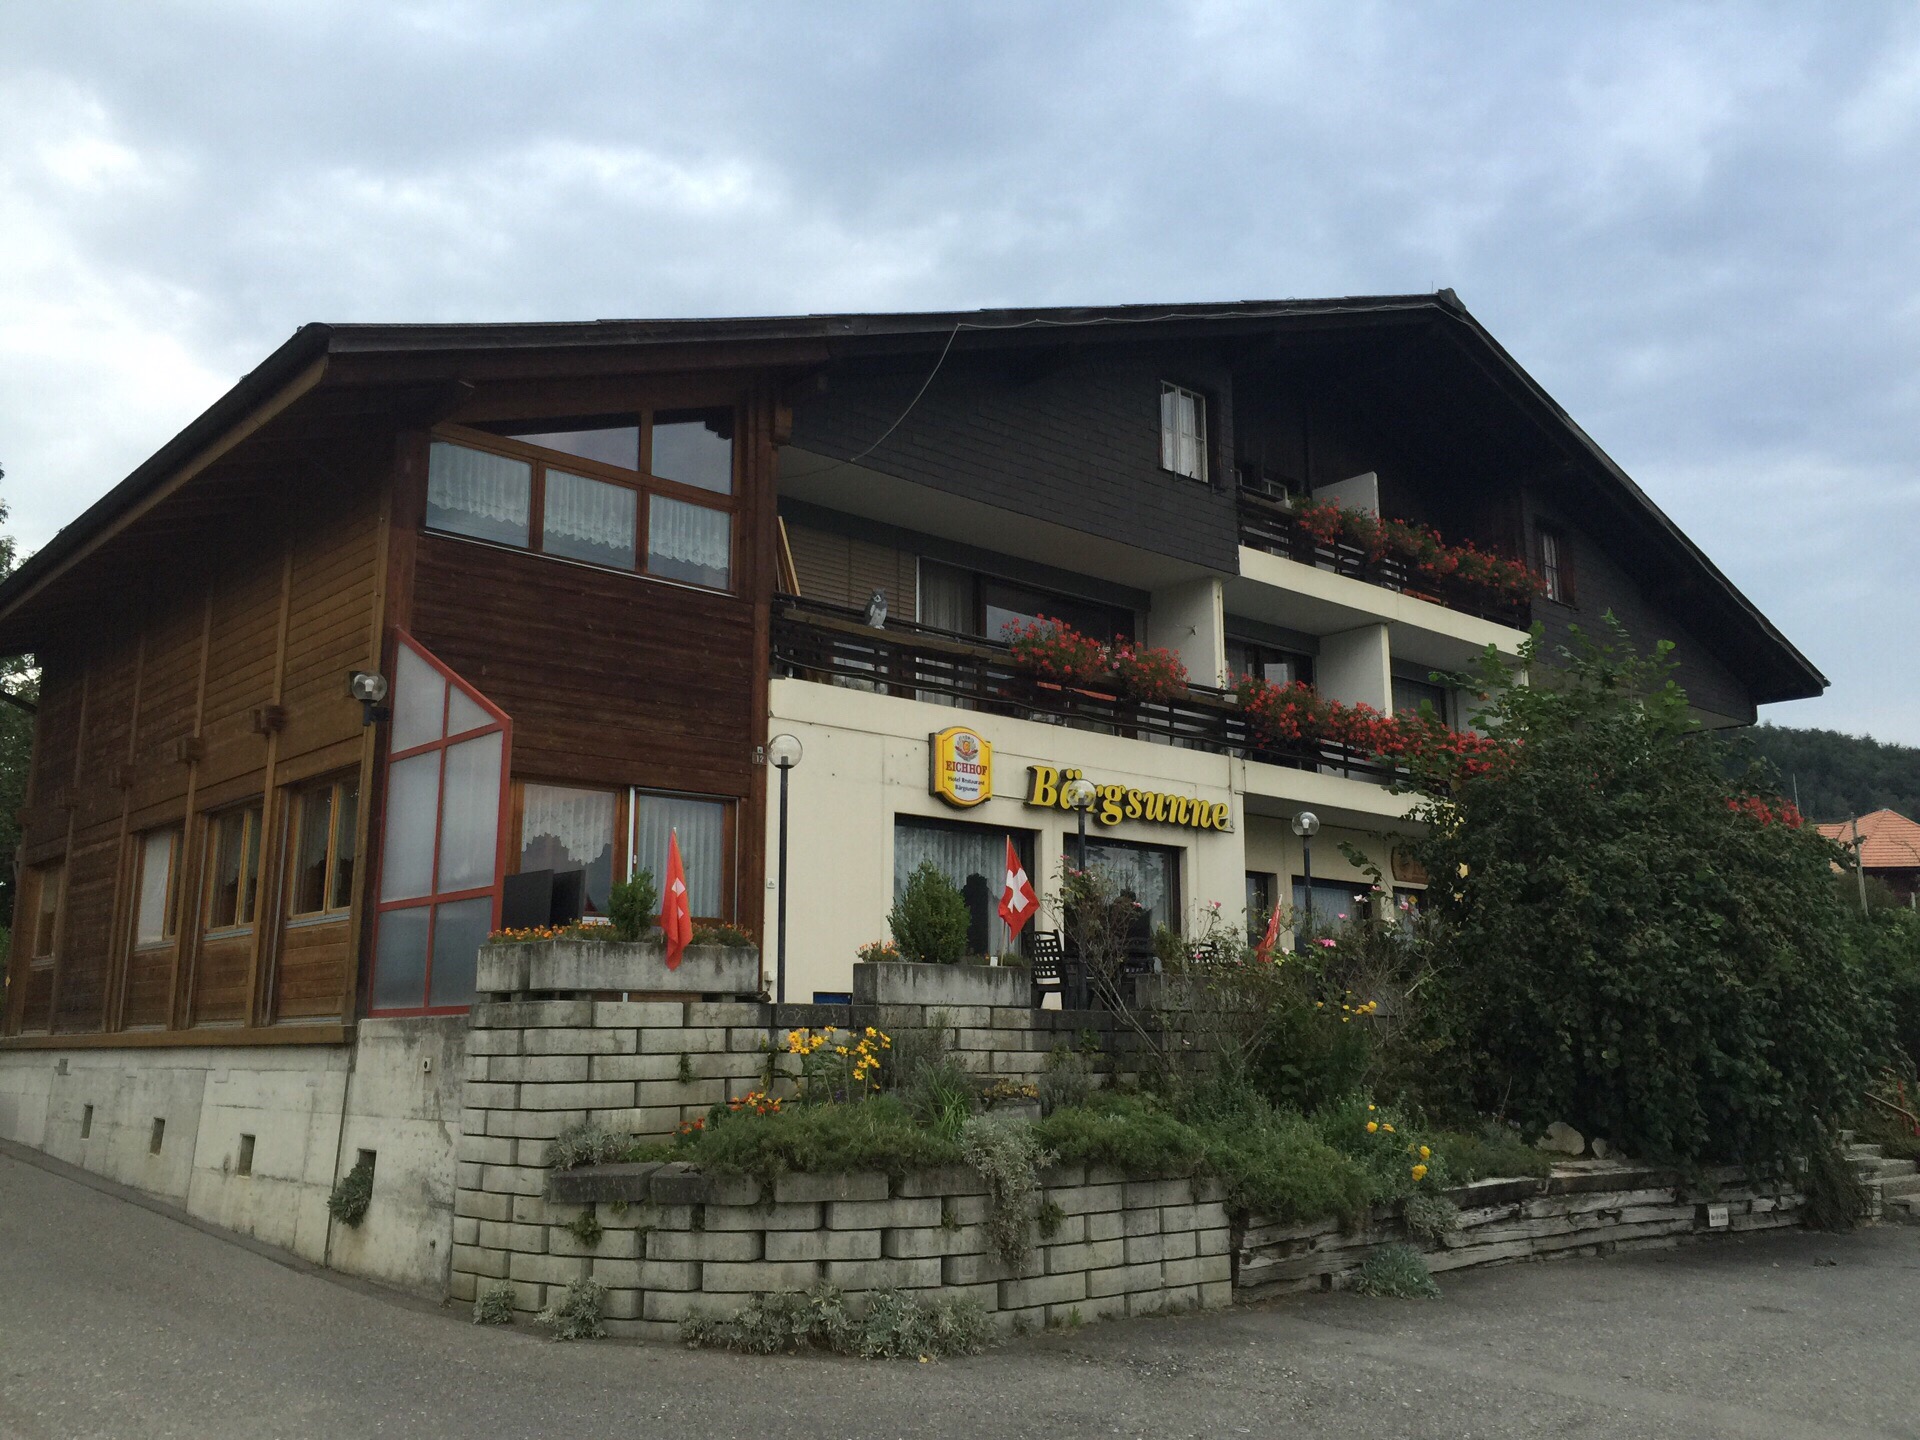 少女峰归来入住阿尔卑斯山脚下的小镇宏德瑞克，酒店是传统的木屋结构，可供住宿、餐饮，本来就觉得瑞士菜偏